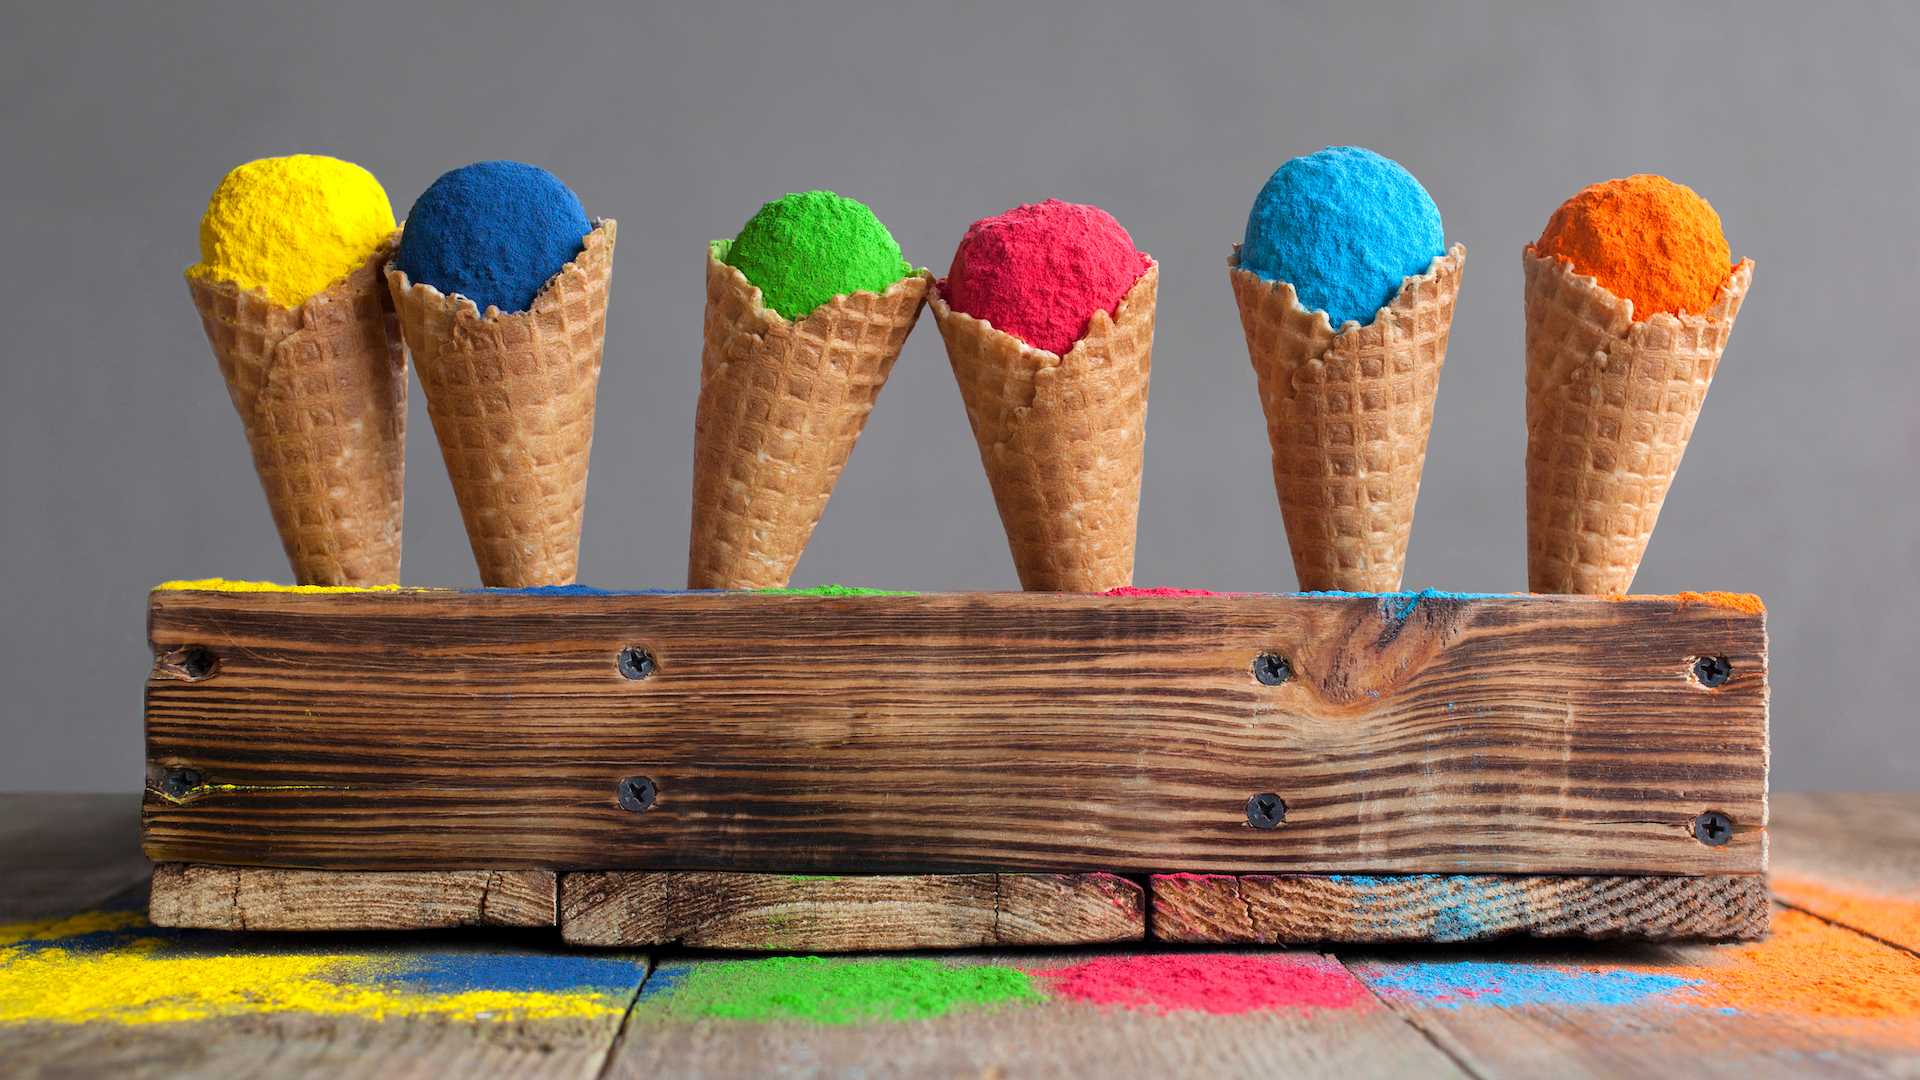 Colourful ice cream cones